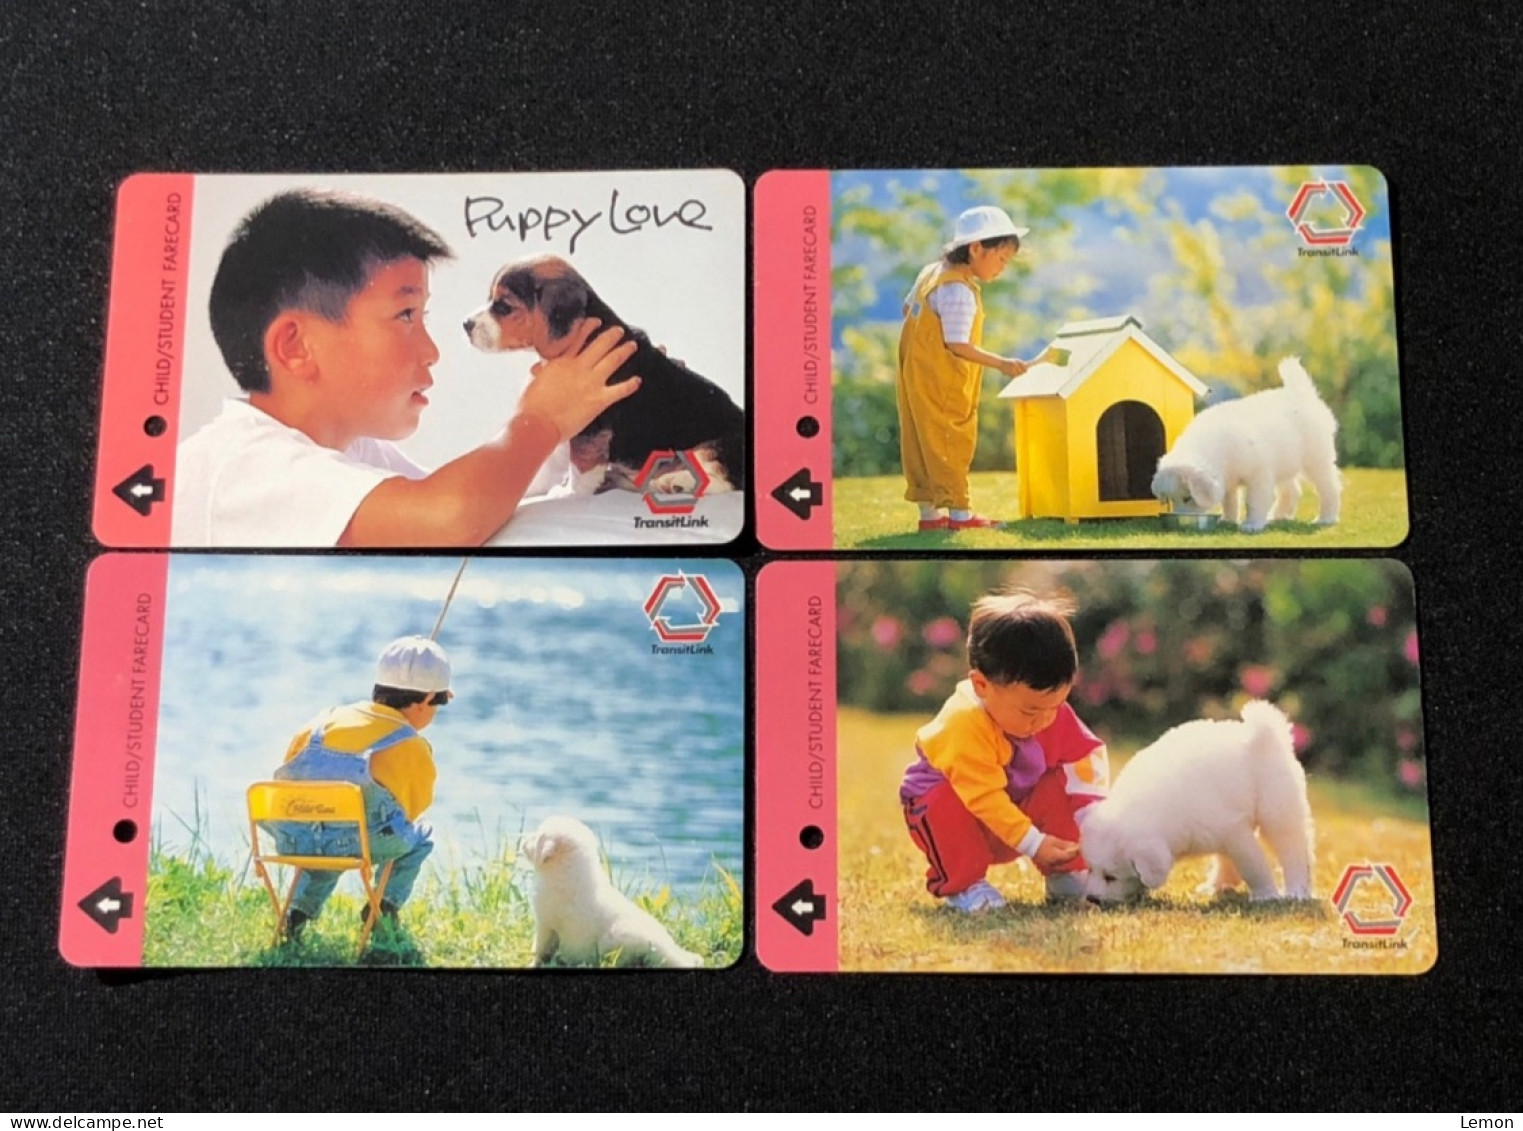 Singapore SMRT TransitLink Metro Train Subway Ticket Card, Boy And Dog, Set Of 4 Used Cards - Singapore